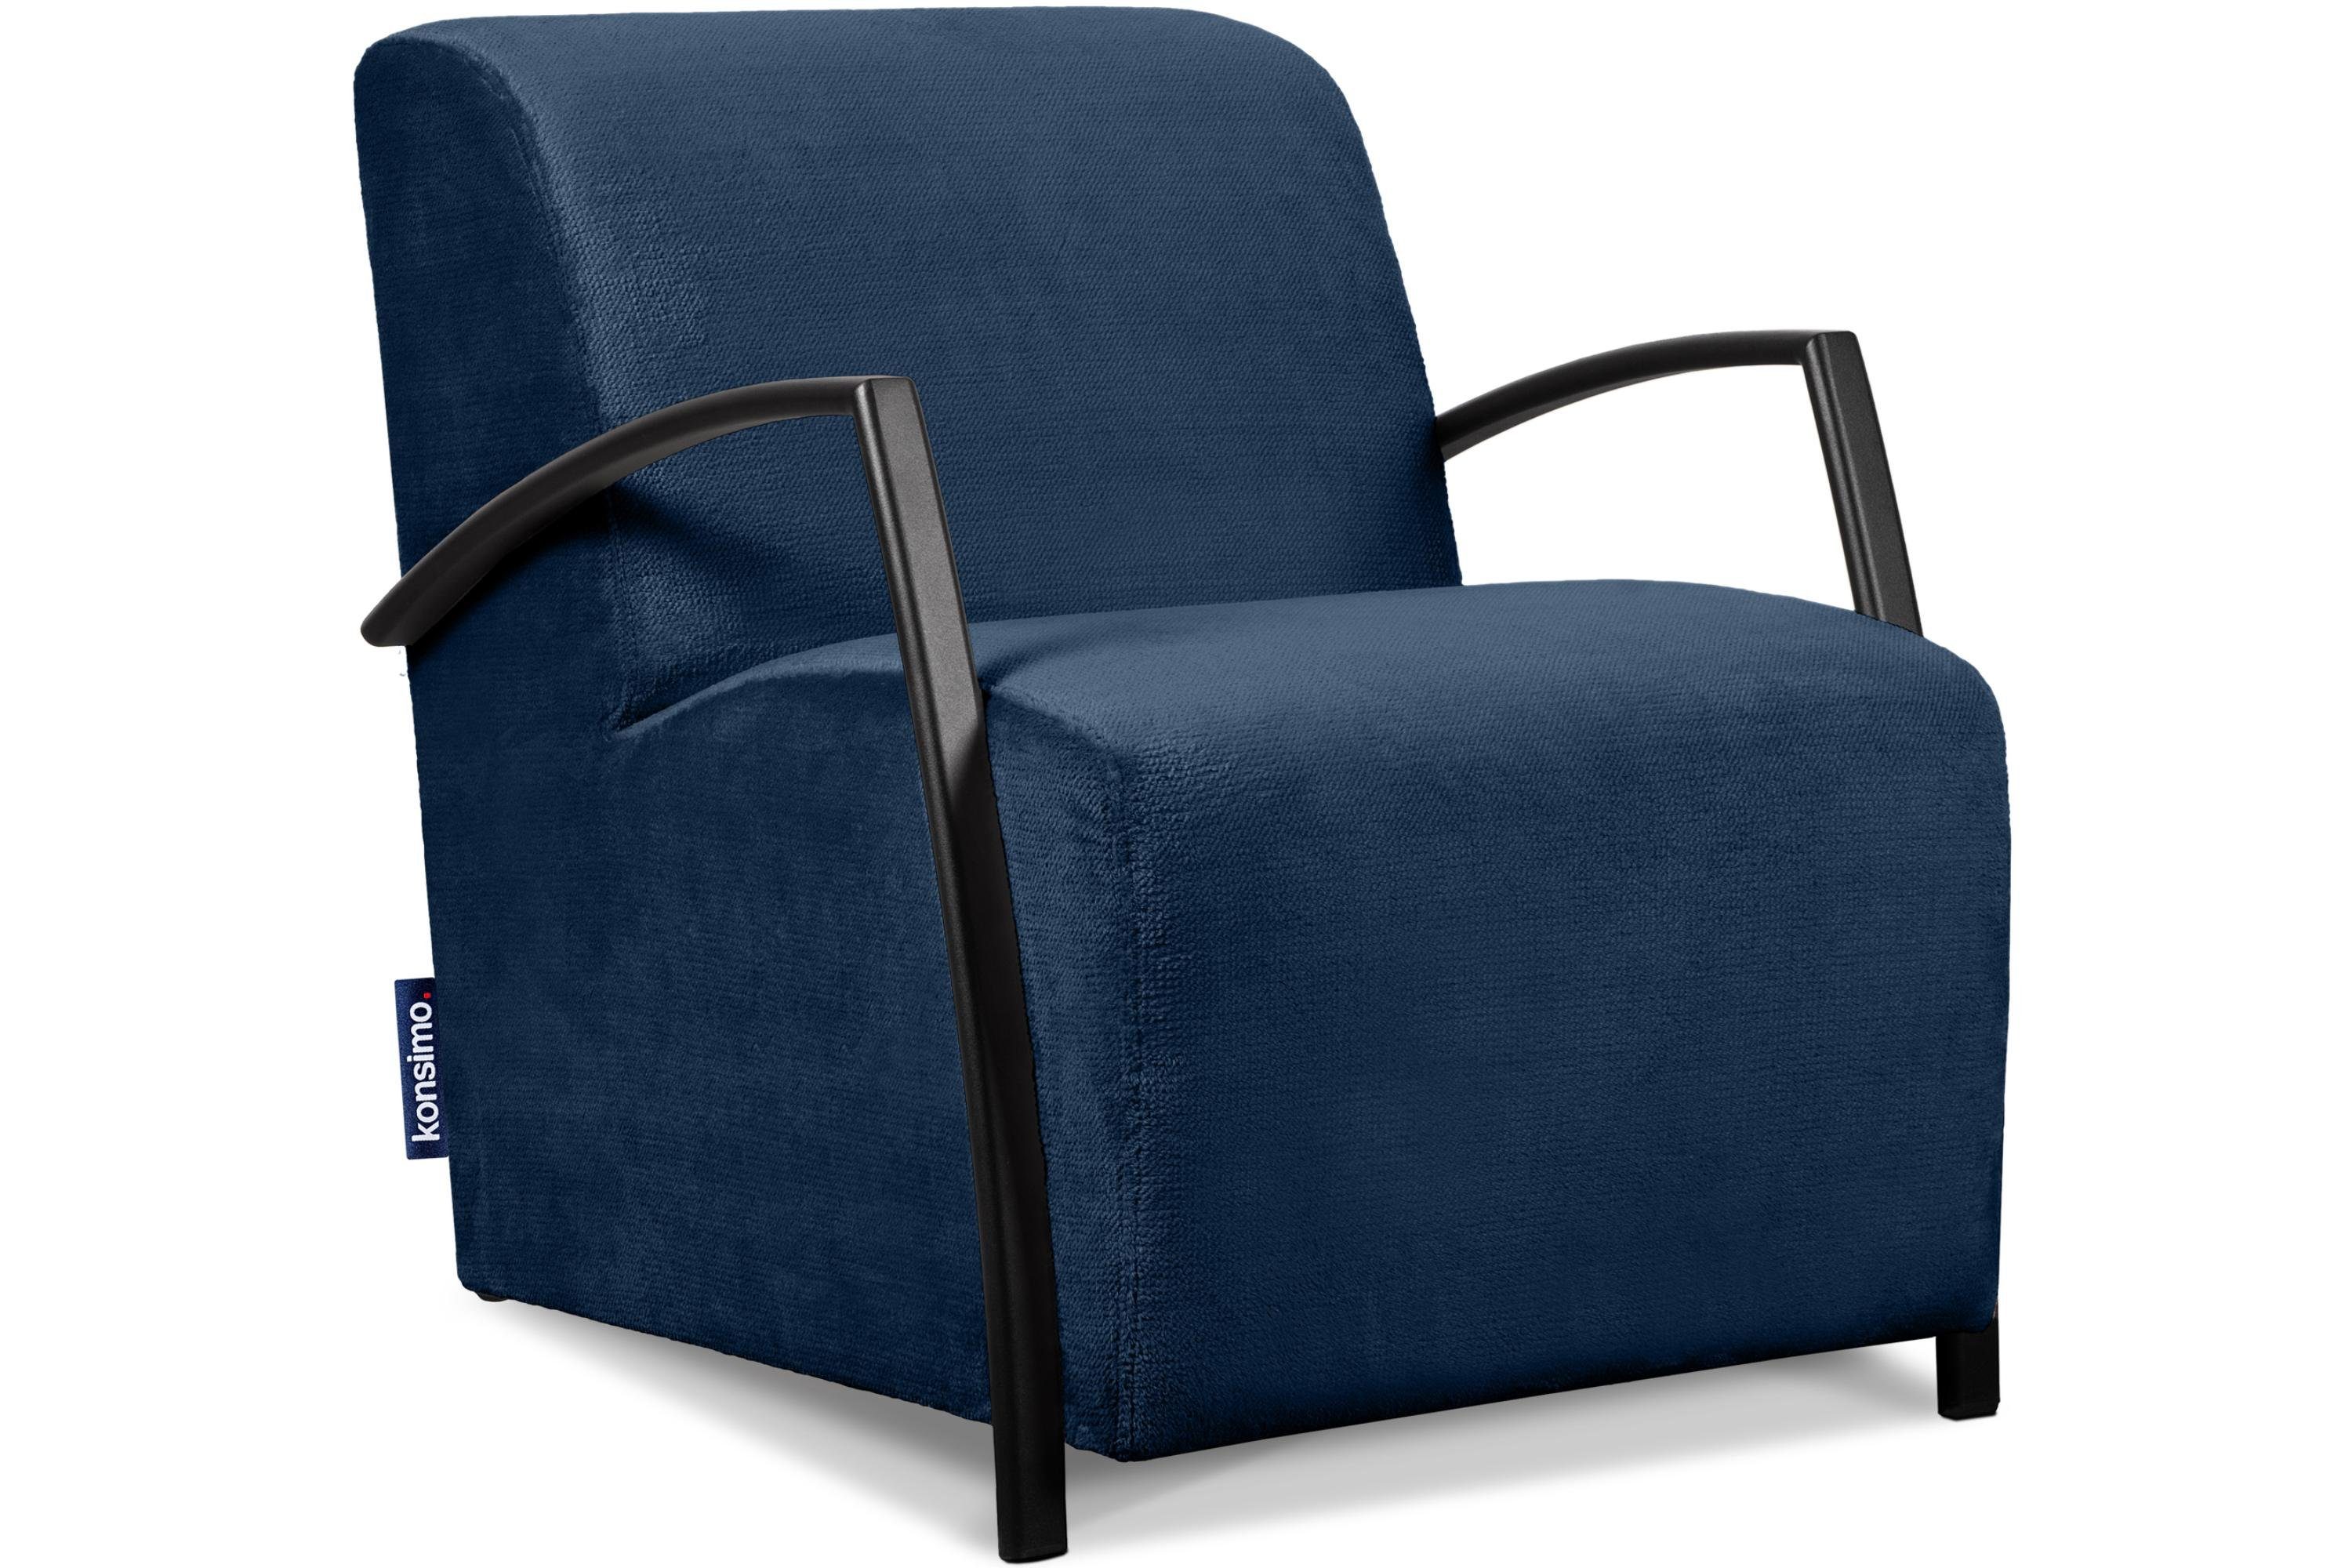 Konsimo Cocktailsessel CARO Sessel, mit gewellter Feder im Sitz, ergonomische Form für bequemes Sitzen marineblau | marineblau